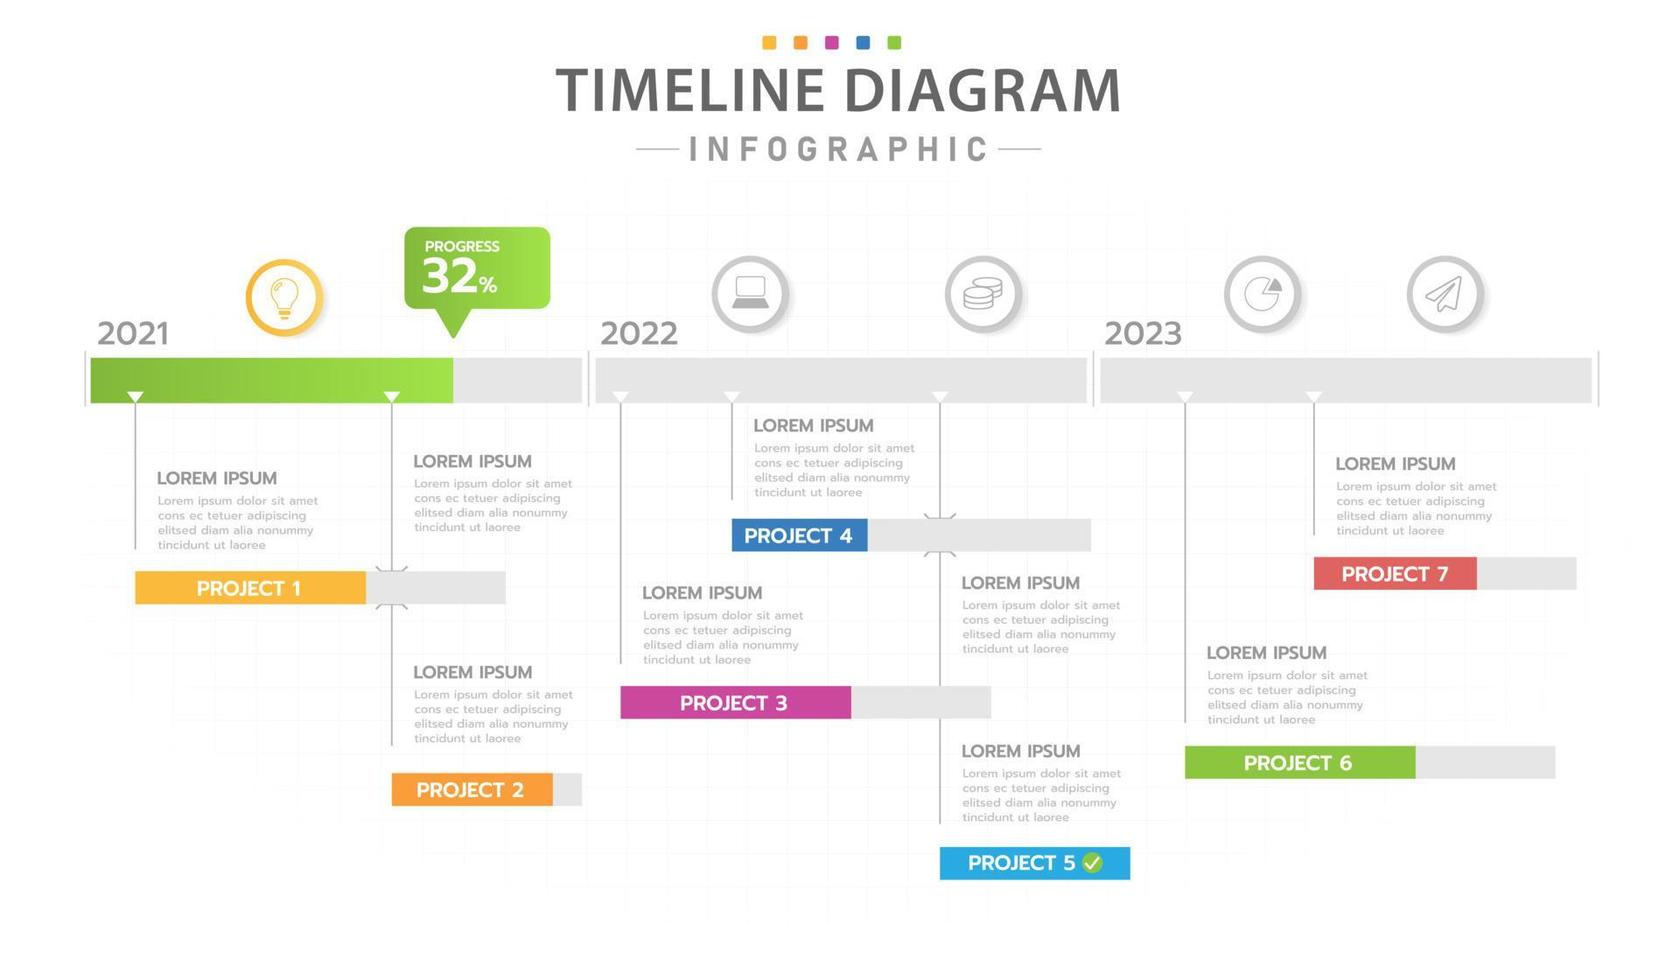 modello di infografica per le imprese. calendario del diagramma temporale moderno con diagramma di Gantt di 3 anni, infografica vettoriale di presentazione.